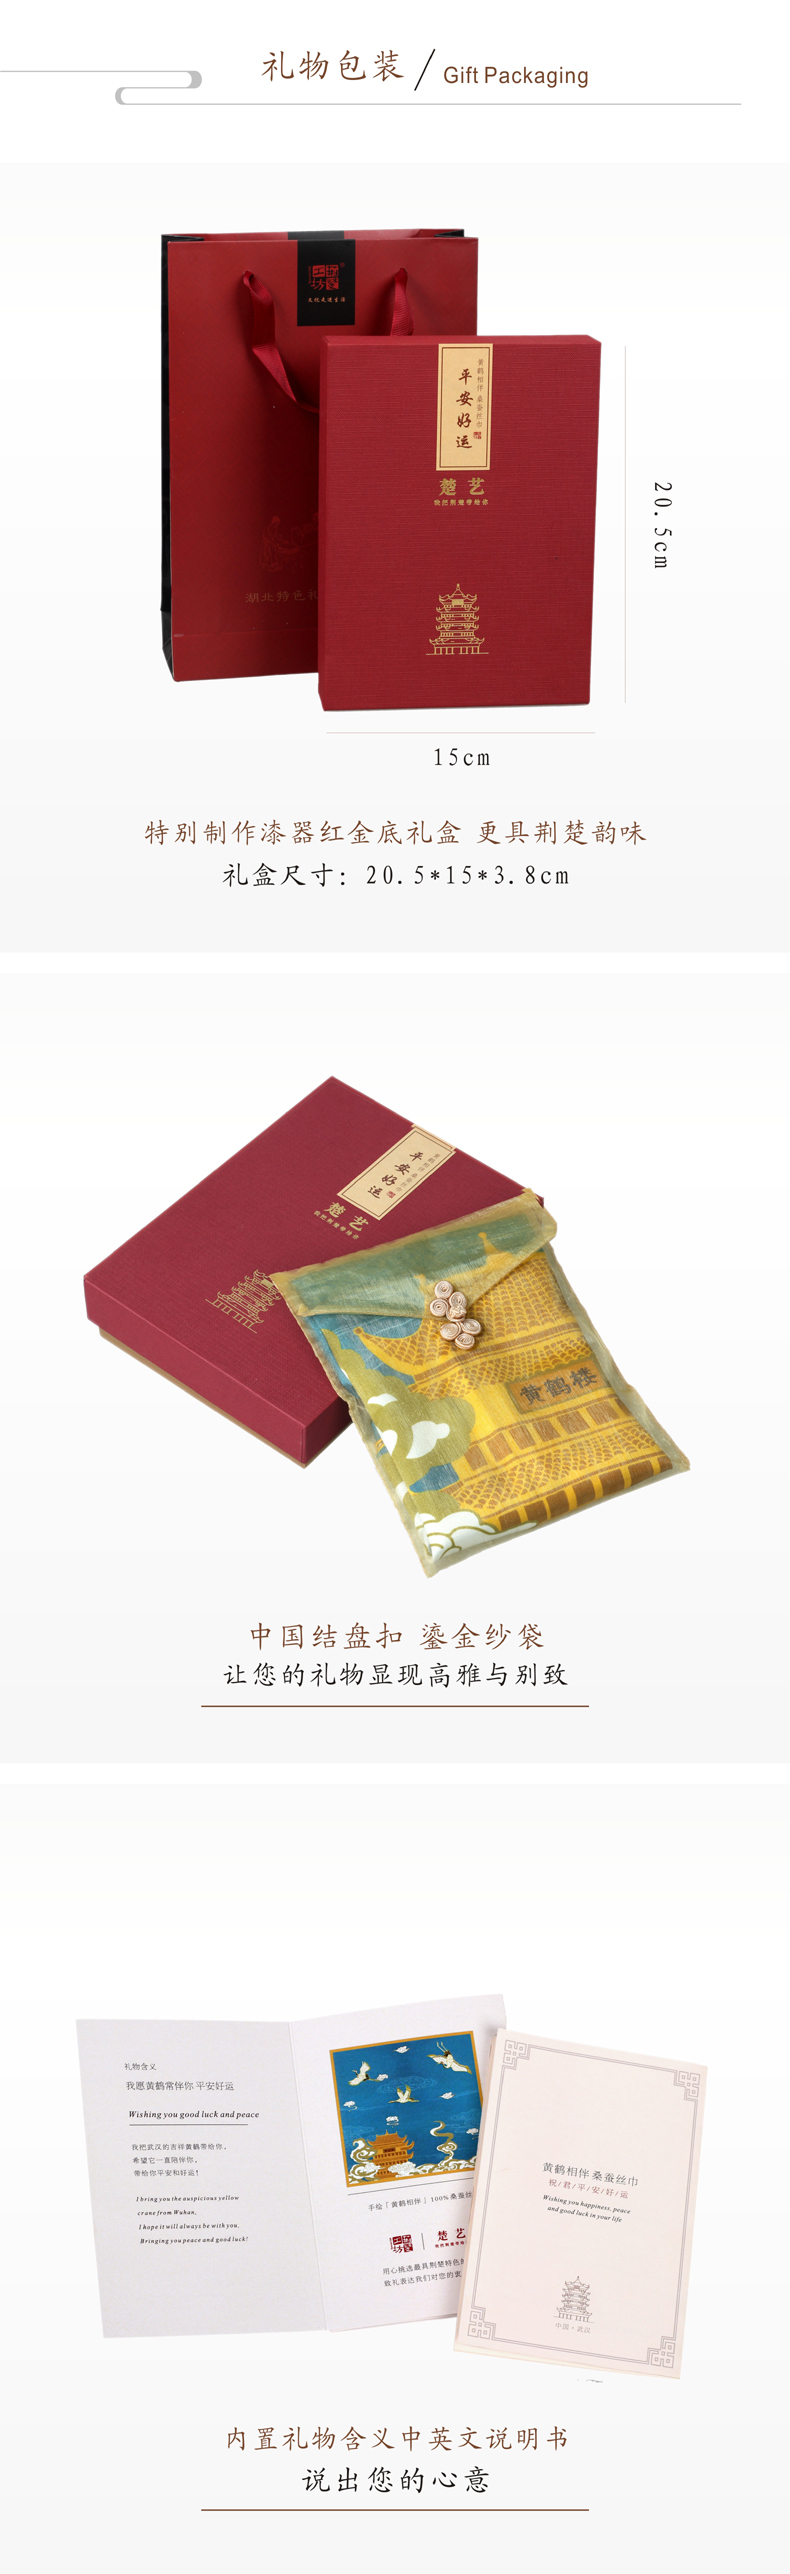 荆楚文化特色的礼盒包装 方便携带